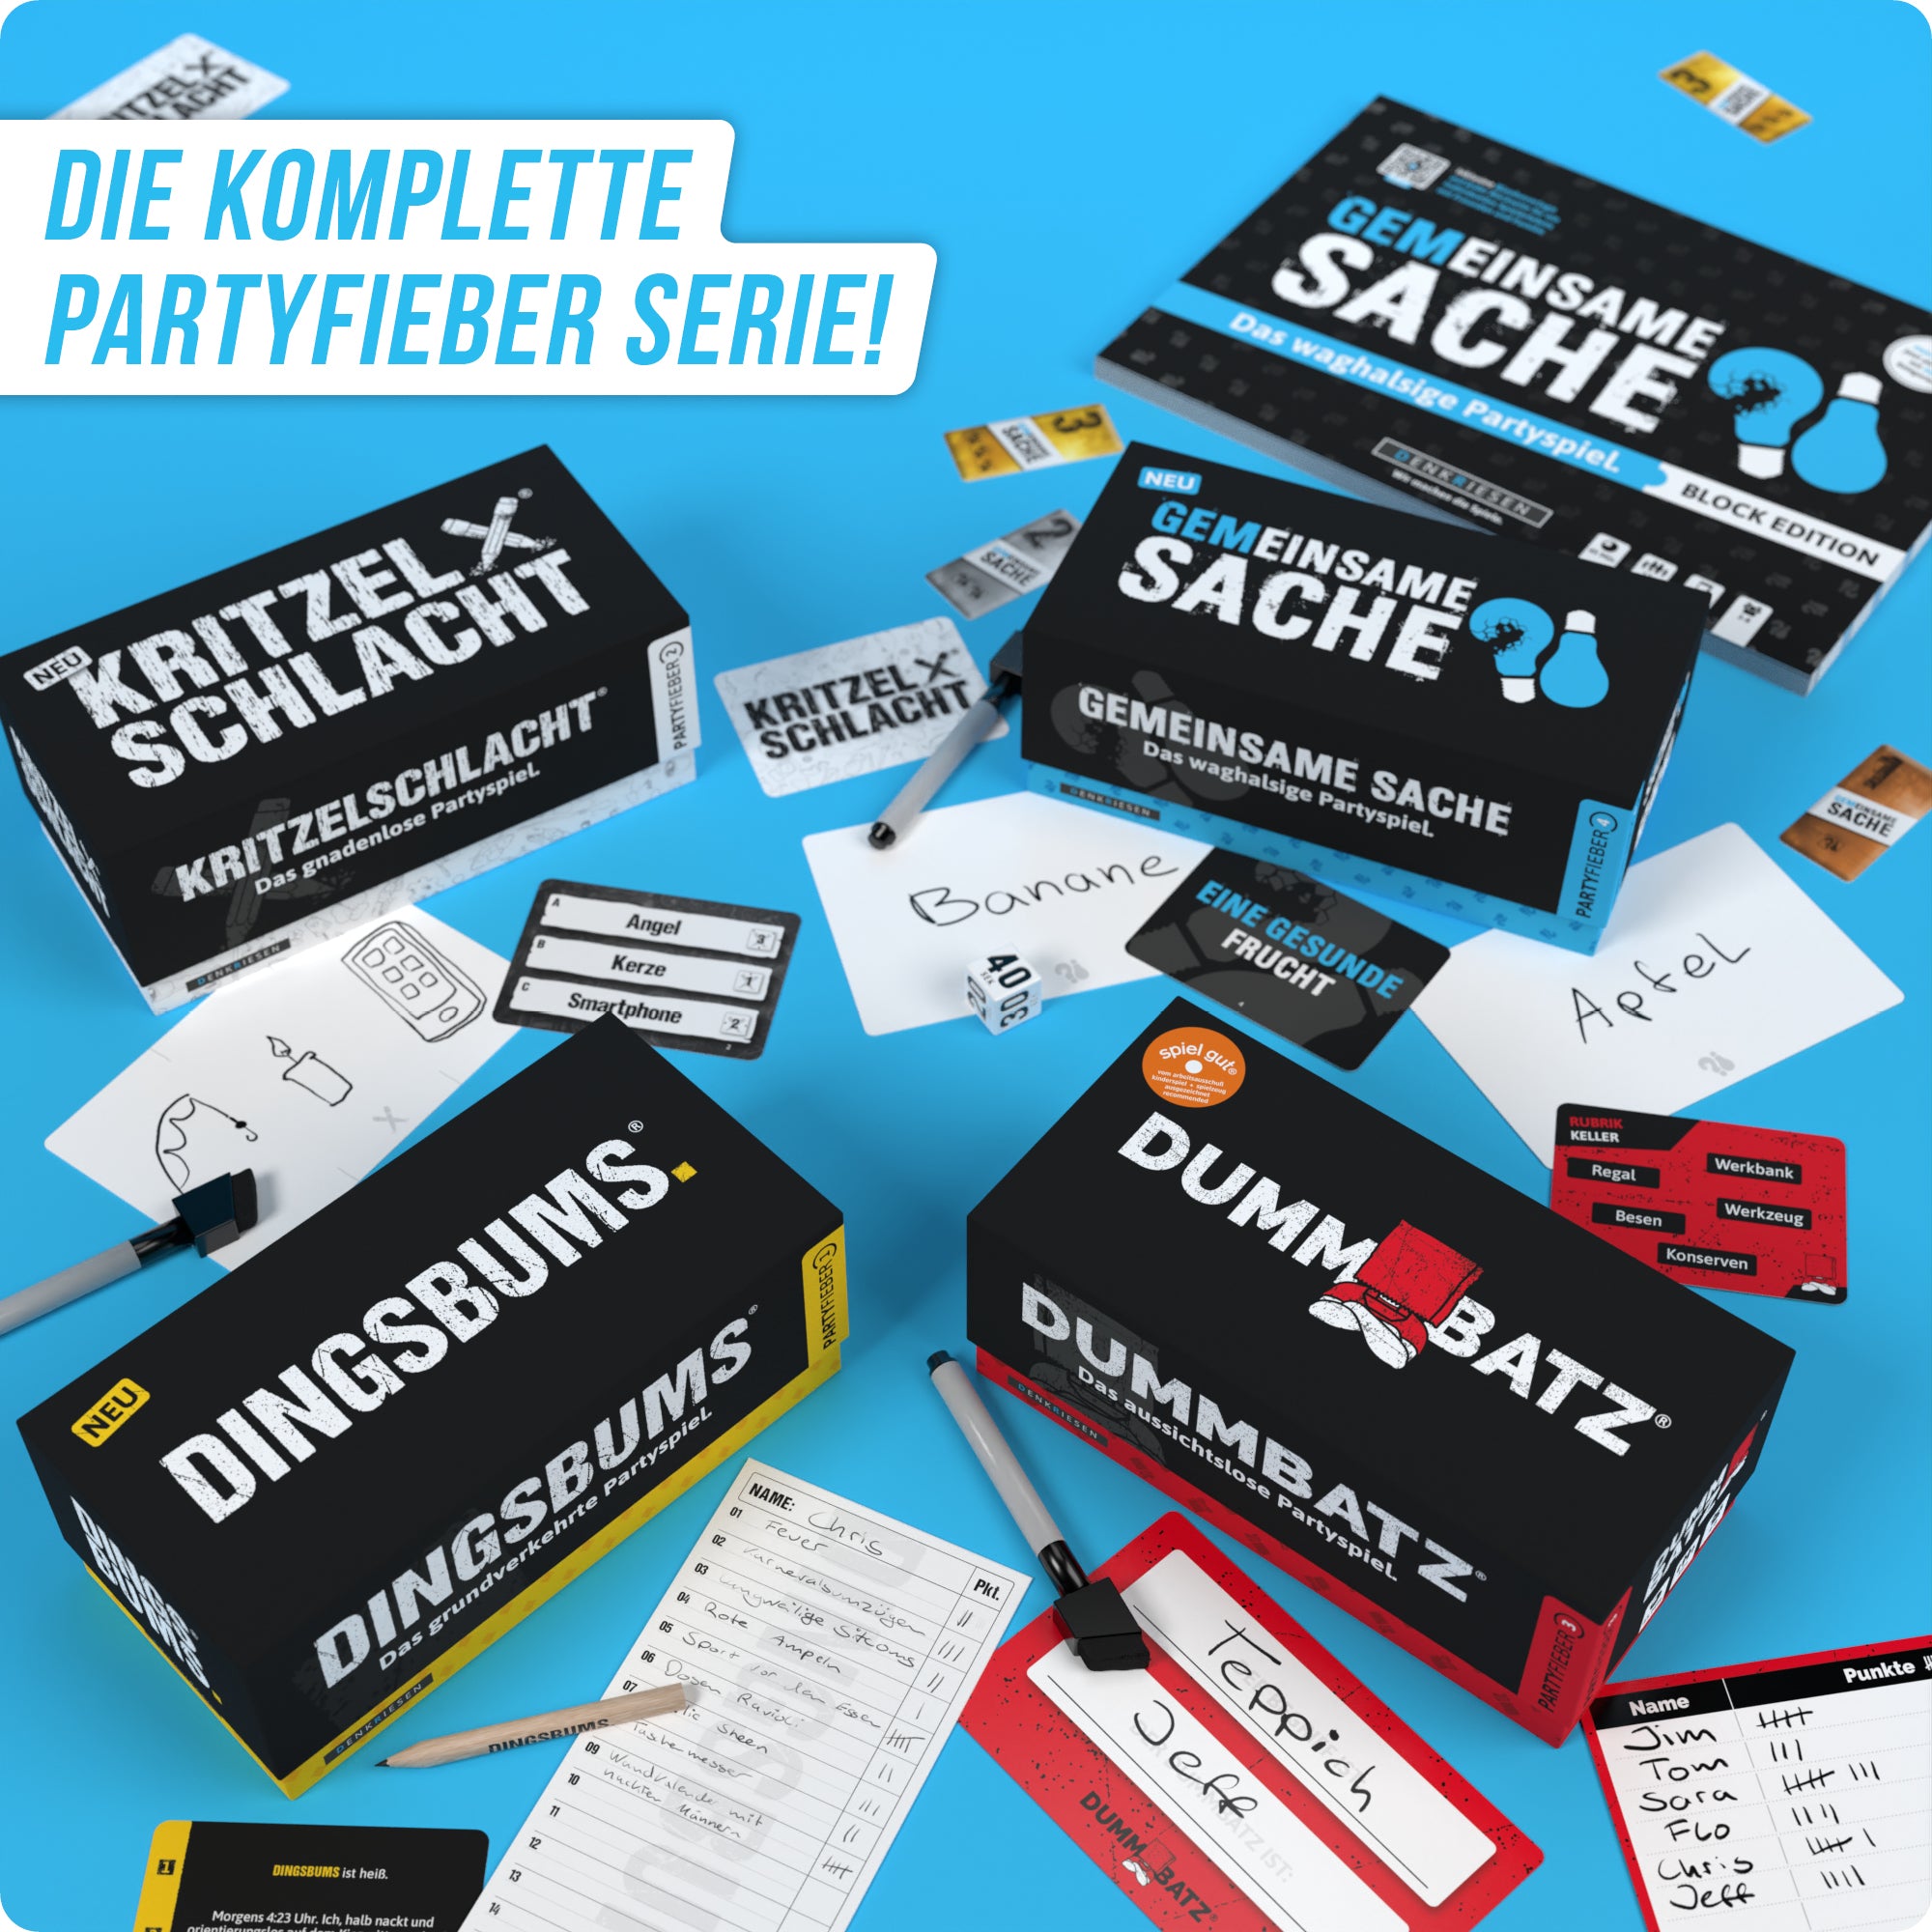 PARTYFIEBER | Kritzelschlacht® – "Das gnadenlose Partyspiel."